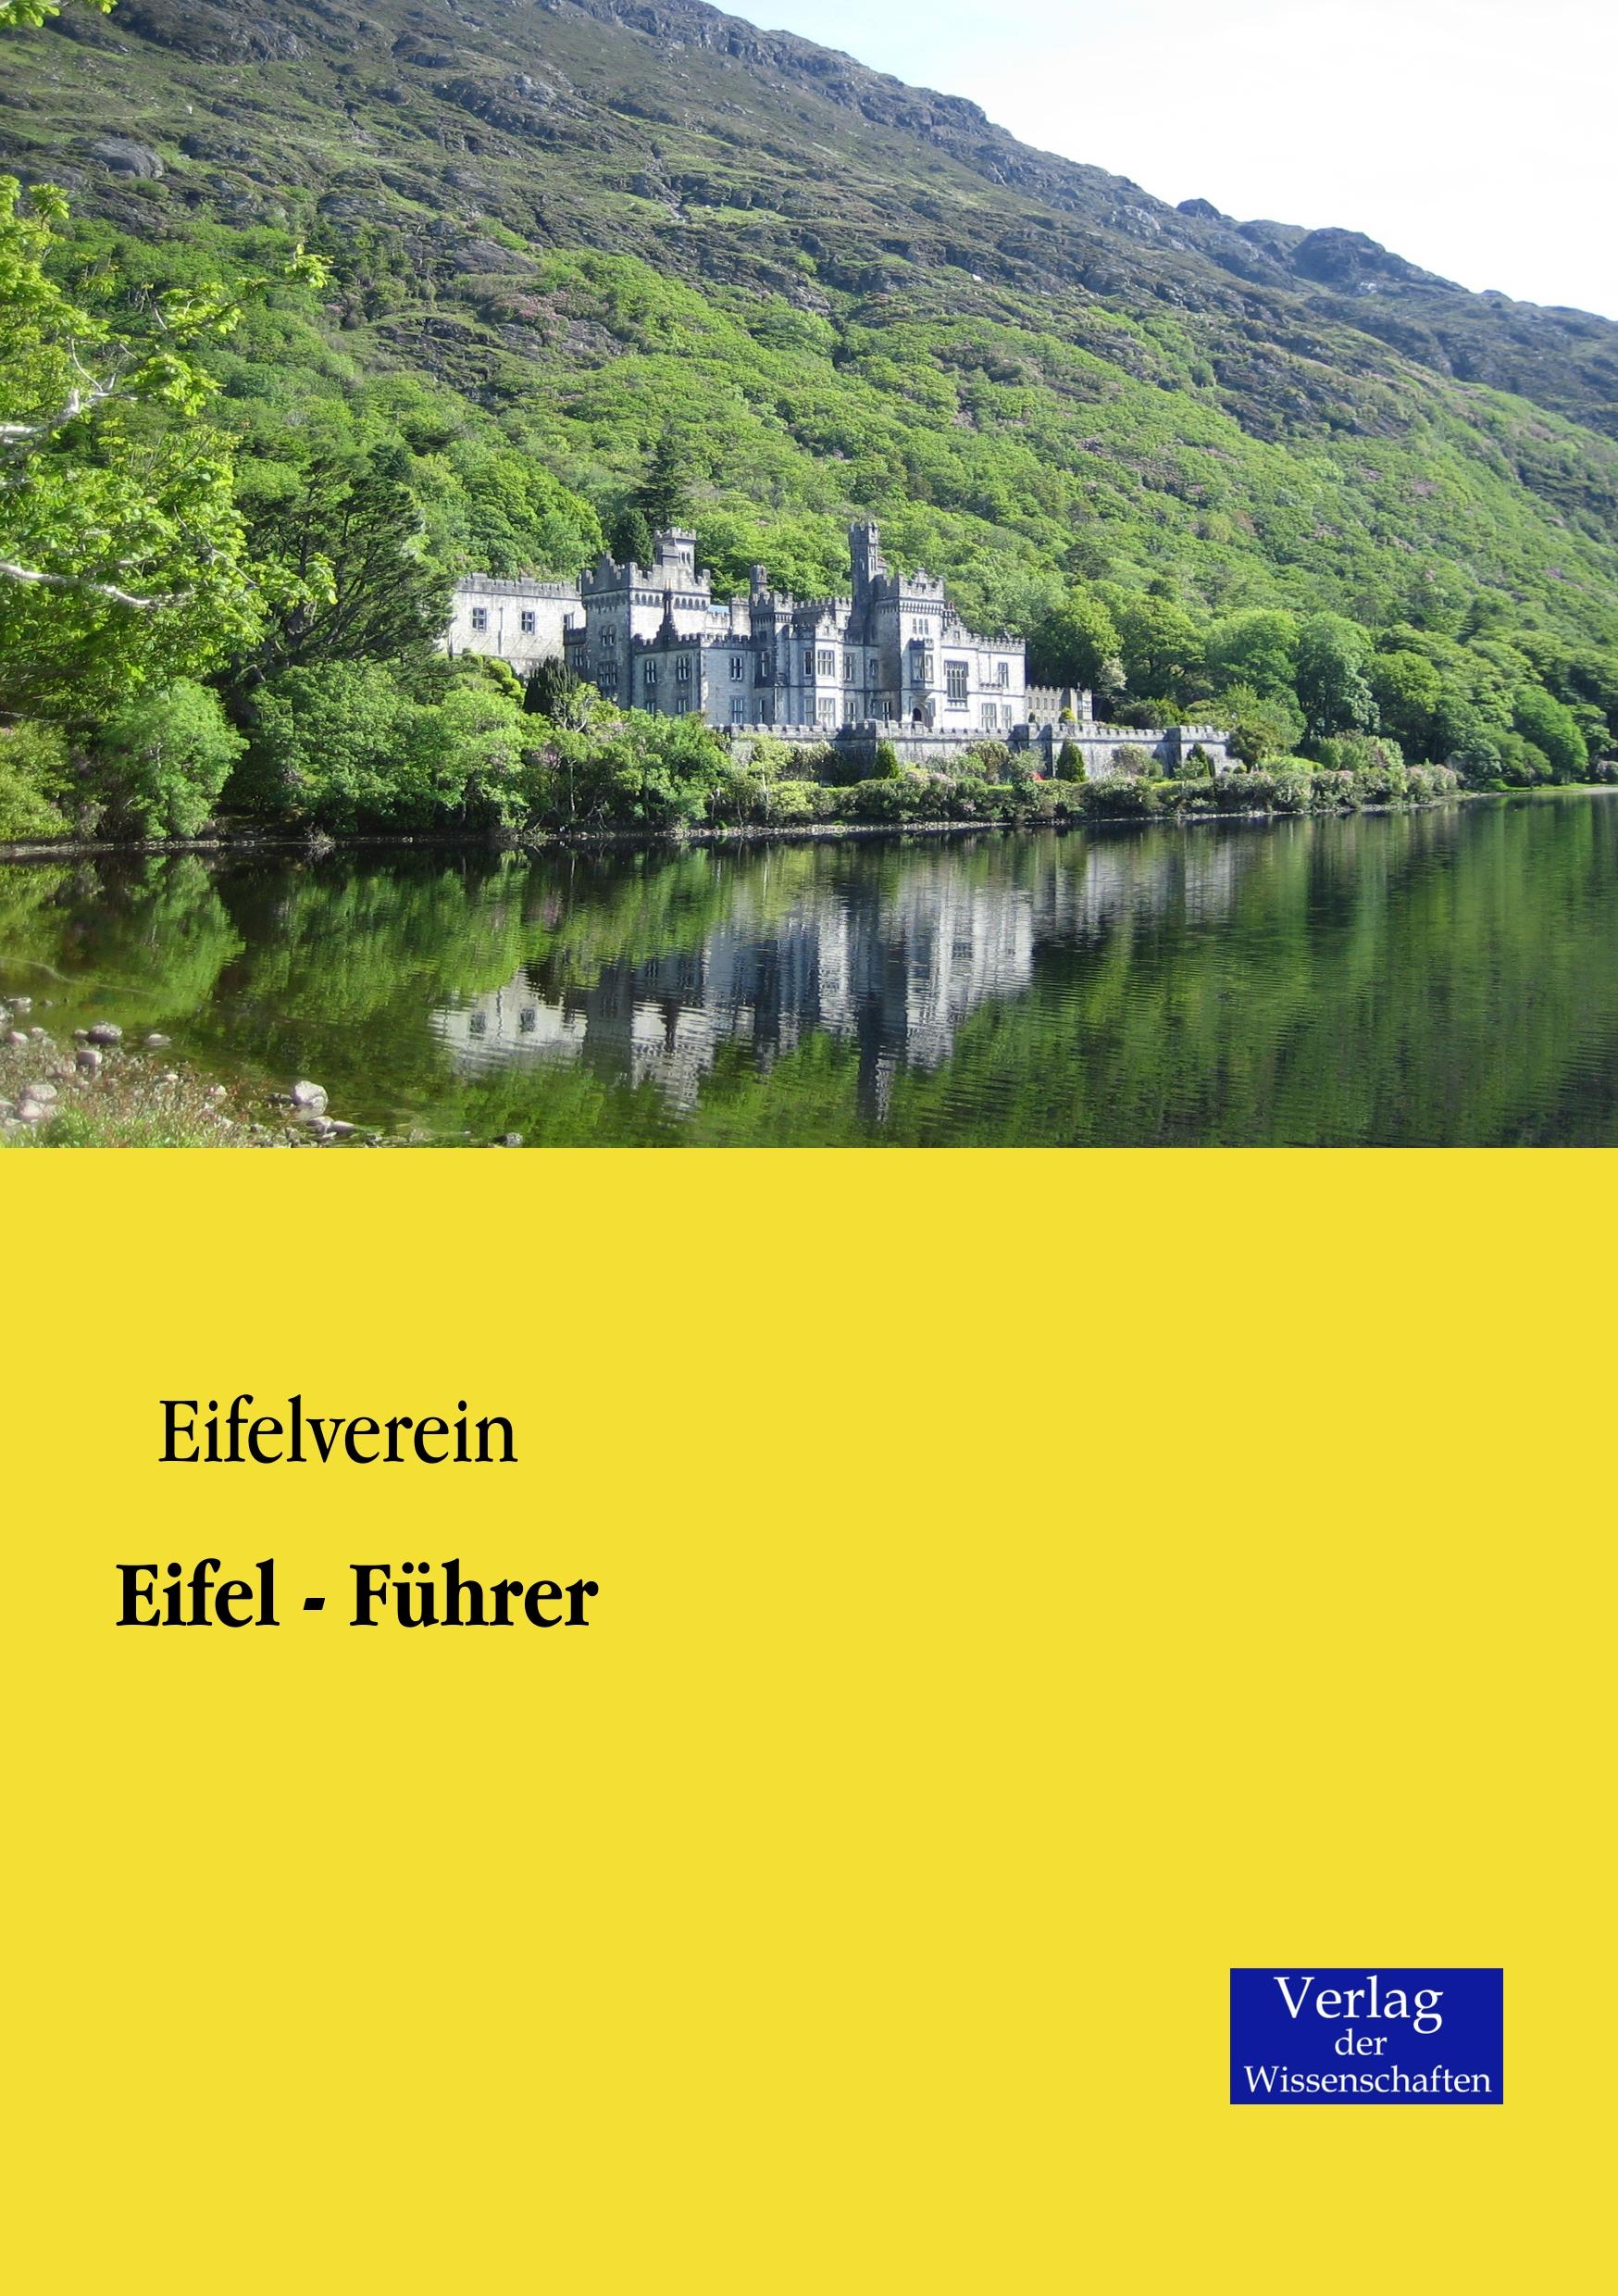 Eifel - Führer / Eifelverein / Taschenbuch / Paperback / 284 S. / Deutsch / 2019 / Vero Verlag / EAN 9783957001191 - Eifelverein